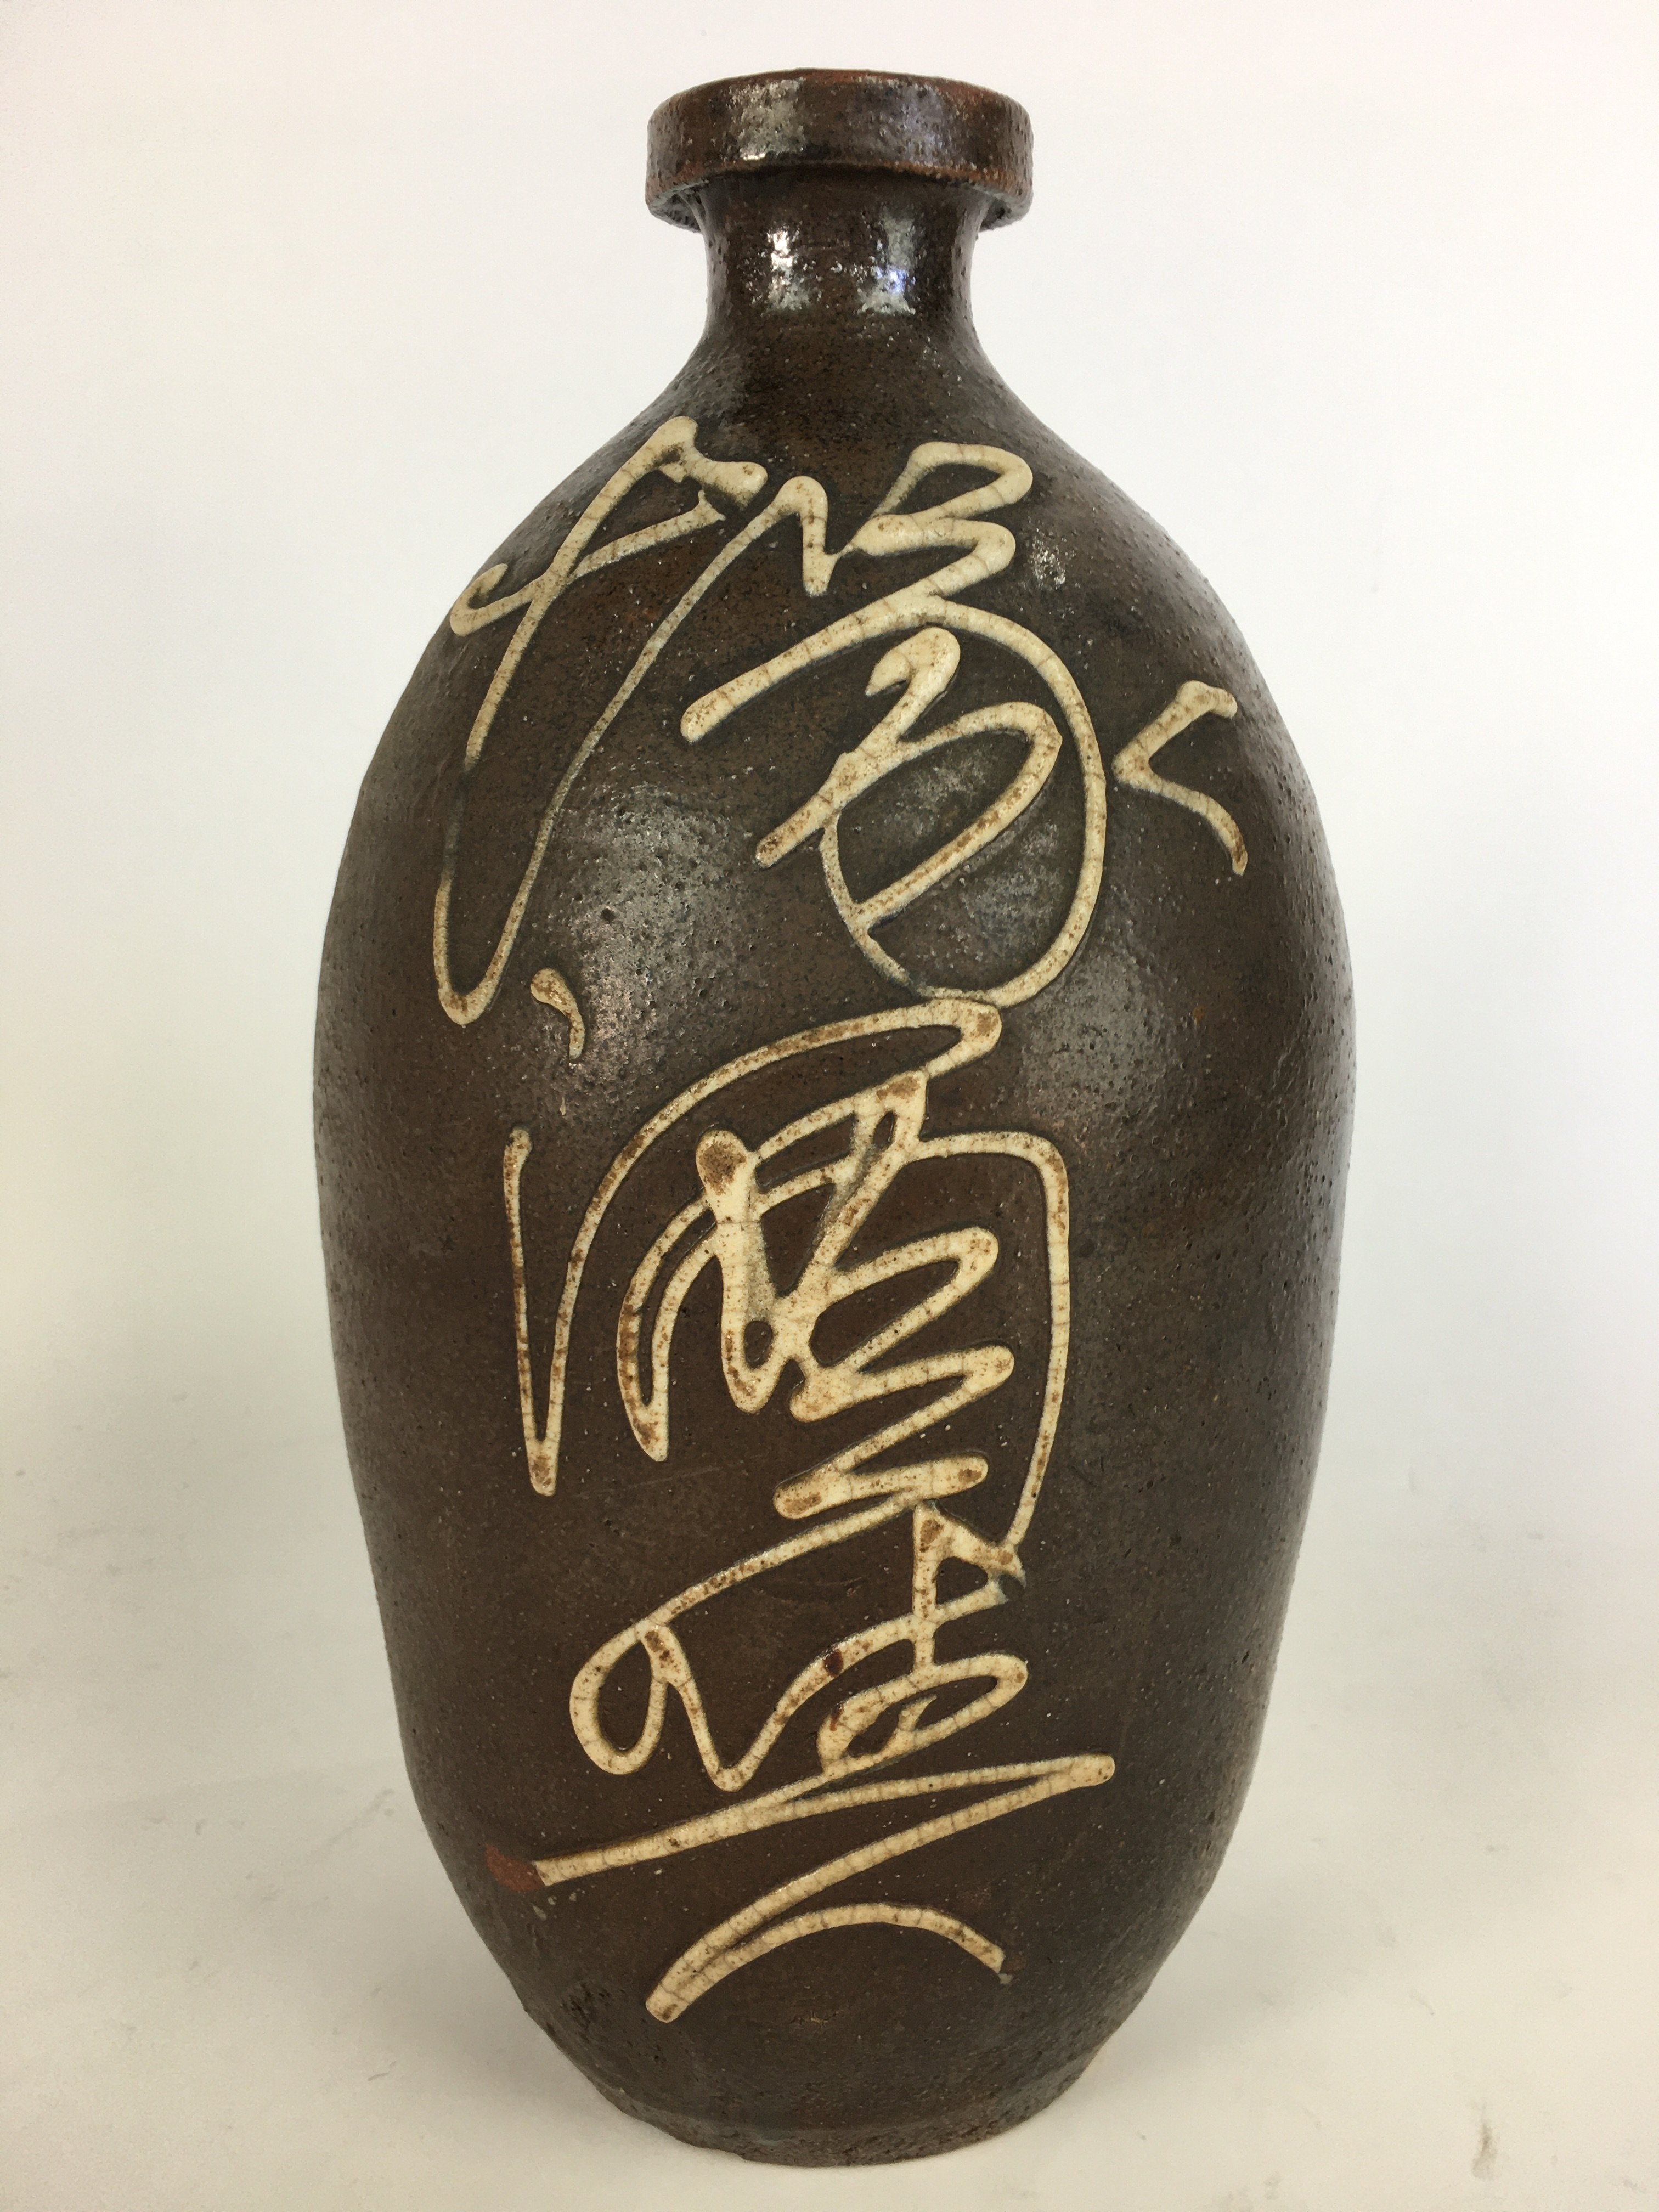 Antique Japanese Ceramic Sake Bottle Tokkuri Pottery Kayoi-Tokkuri Brown TS283